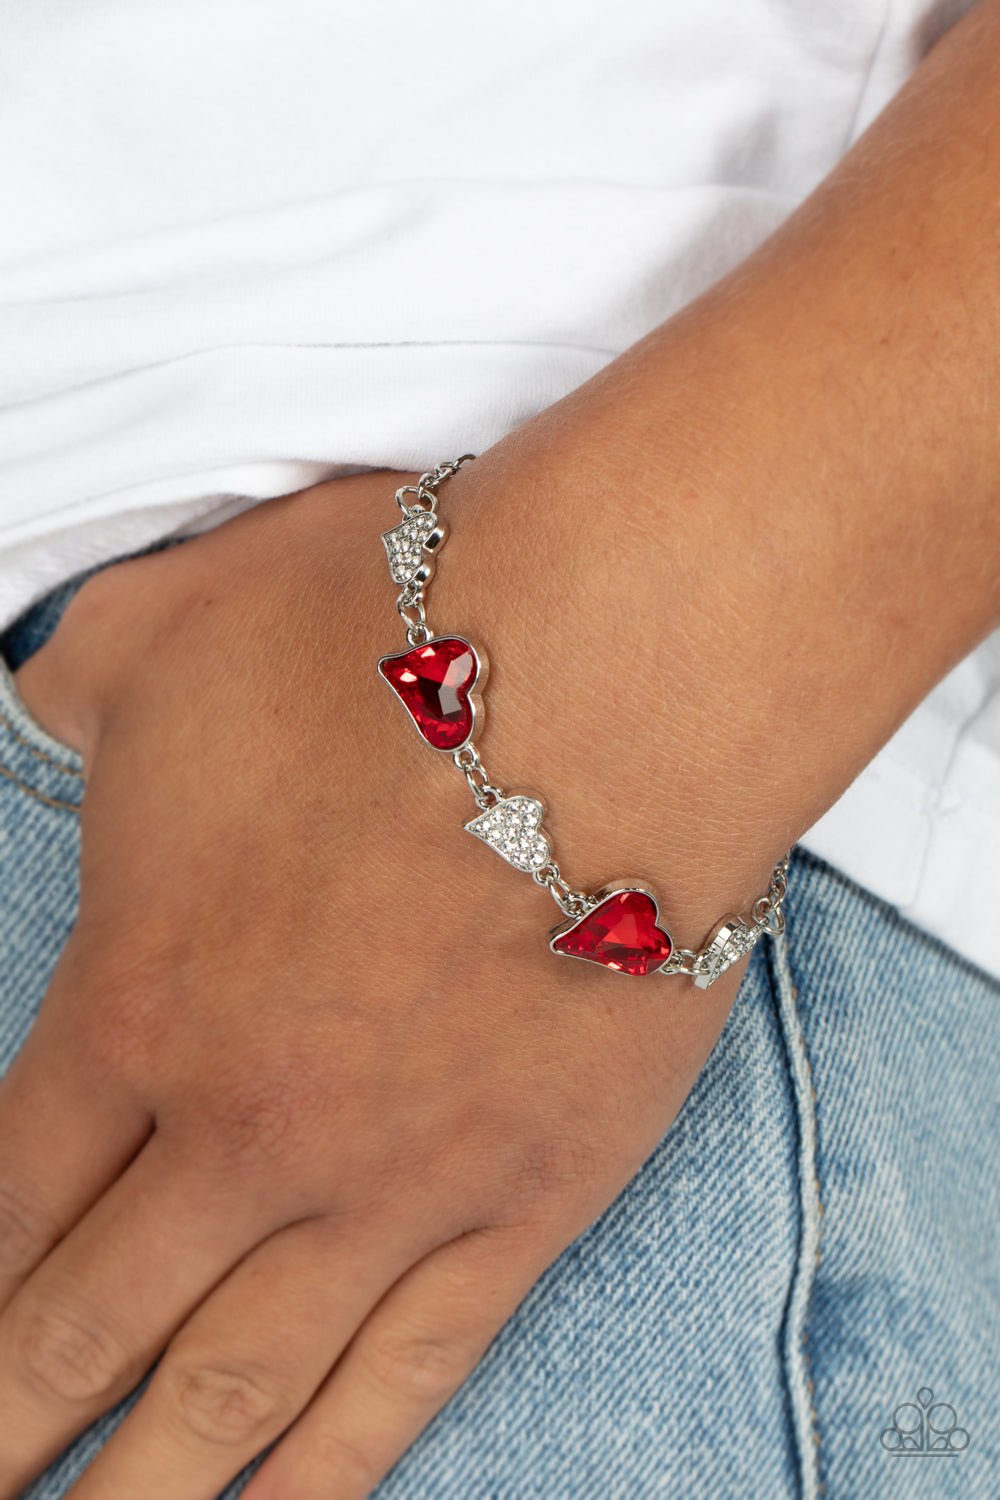 Cluelessly Crushing Red Heart Bracelet - Jewelry by Bretta - Jewelry by Bretta